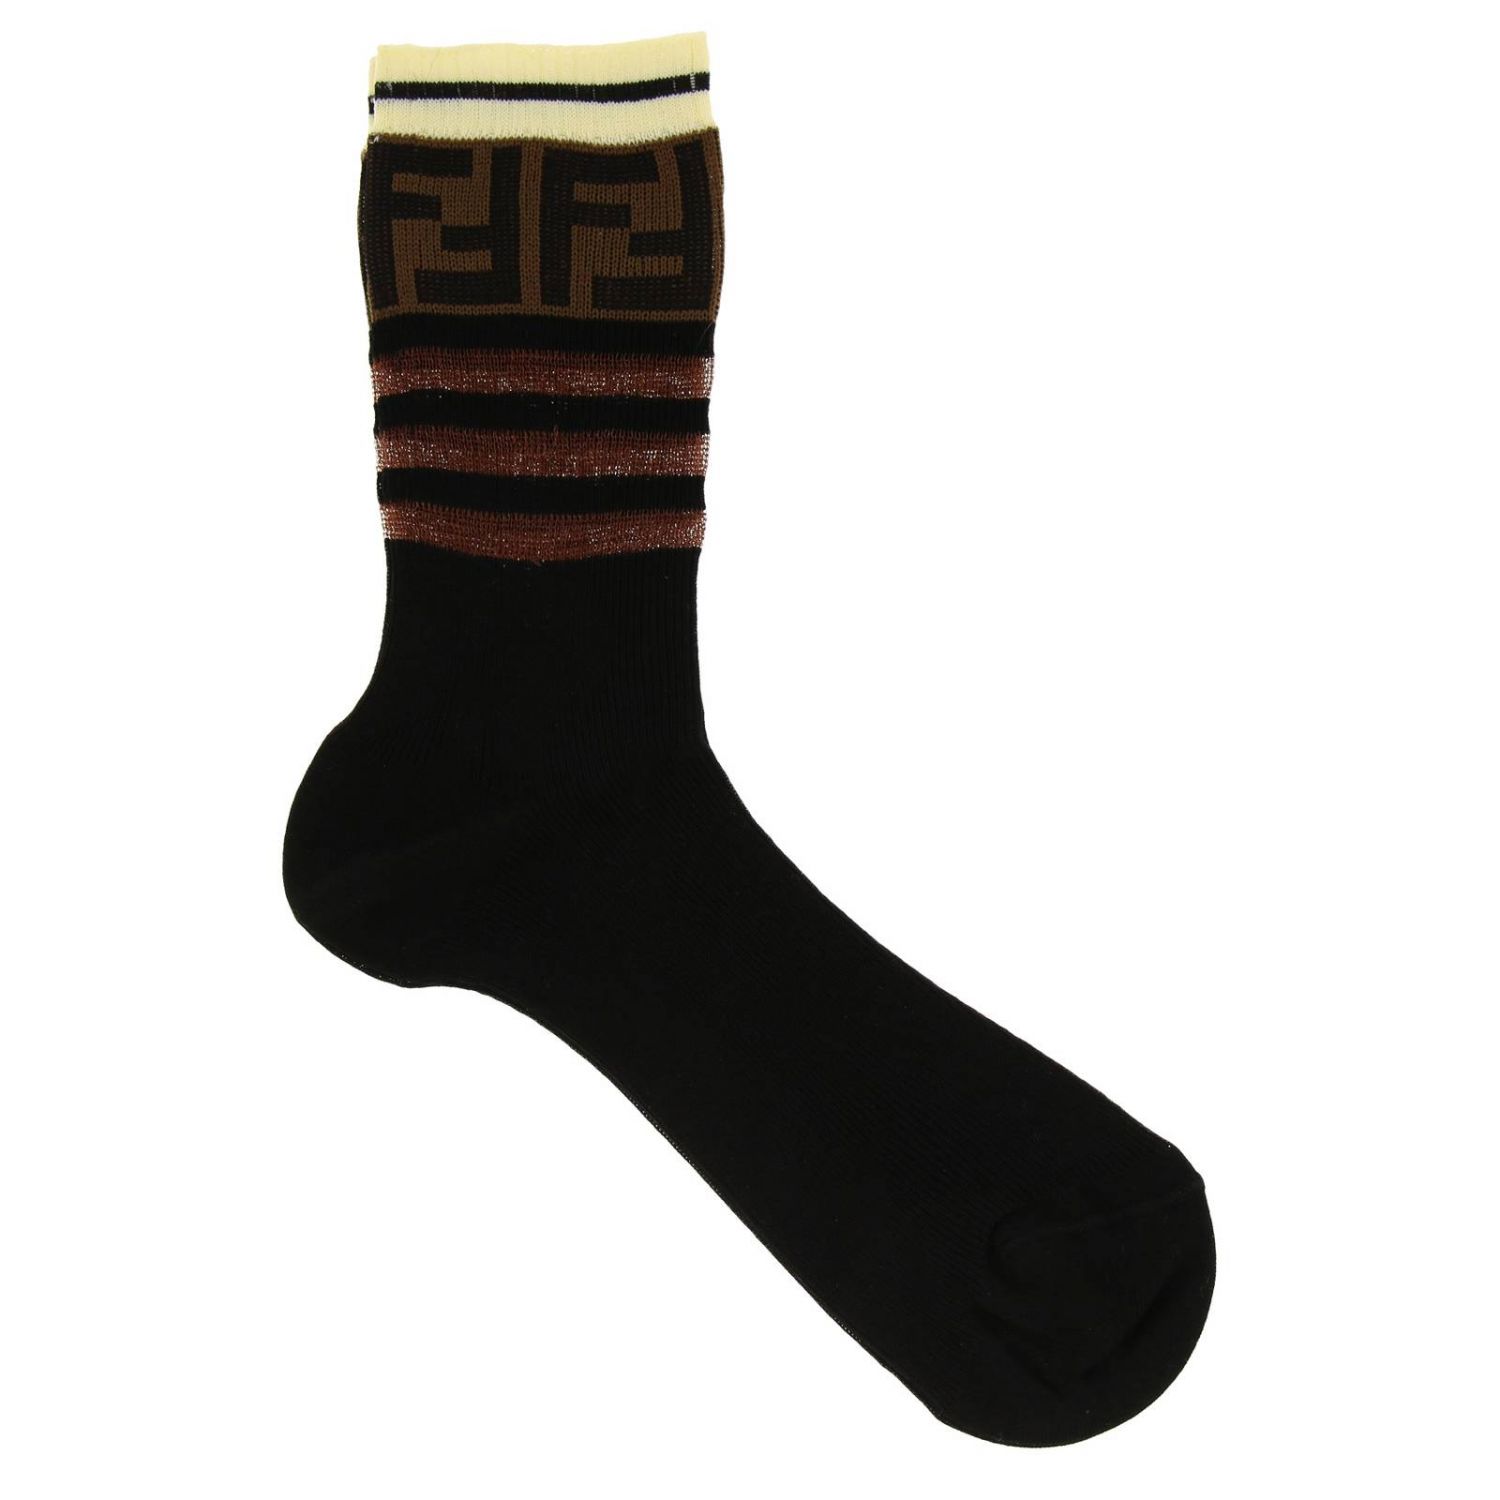 FENDI: Socks in stretch technical fabric with FF logo | Socks Fendi ...